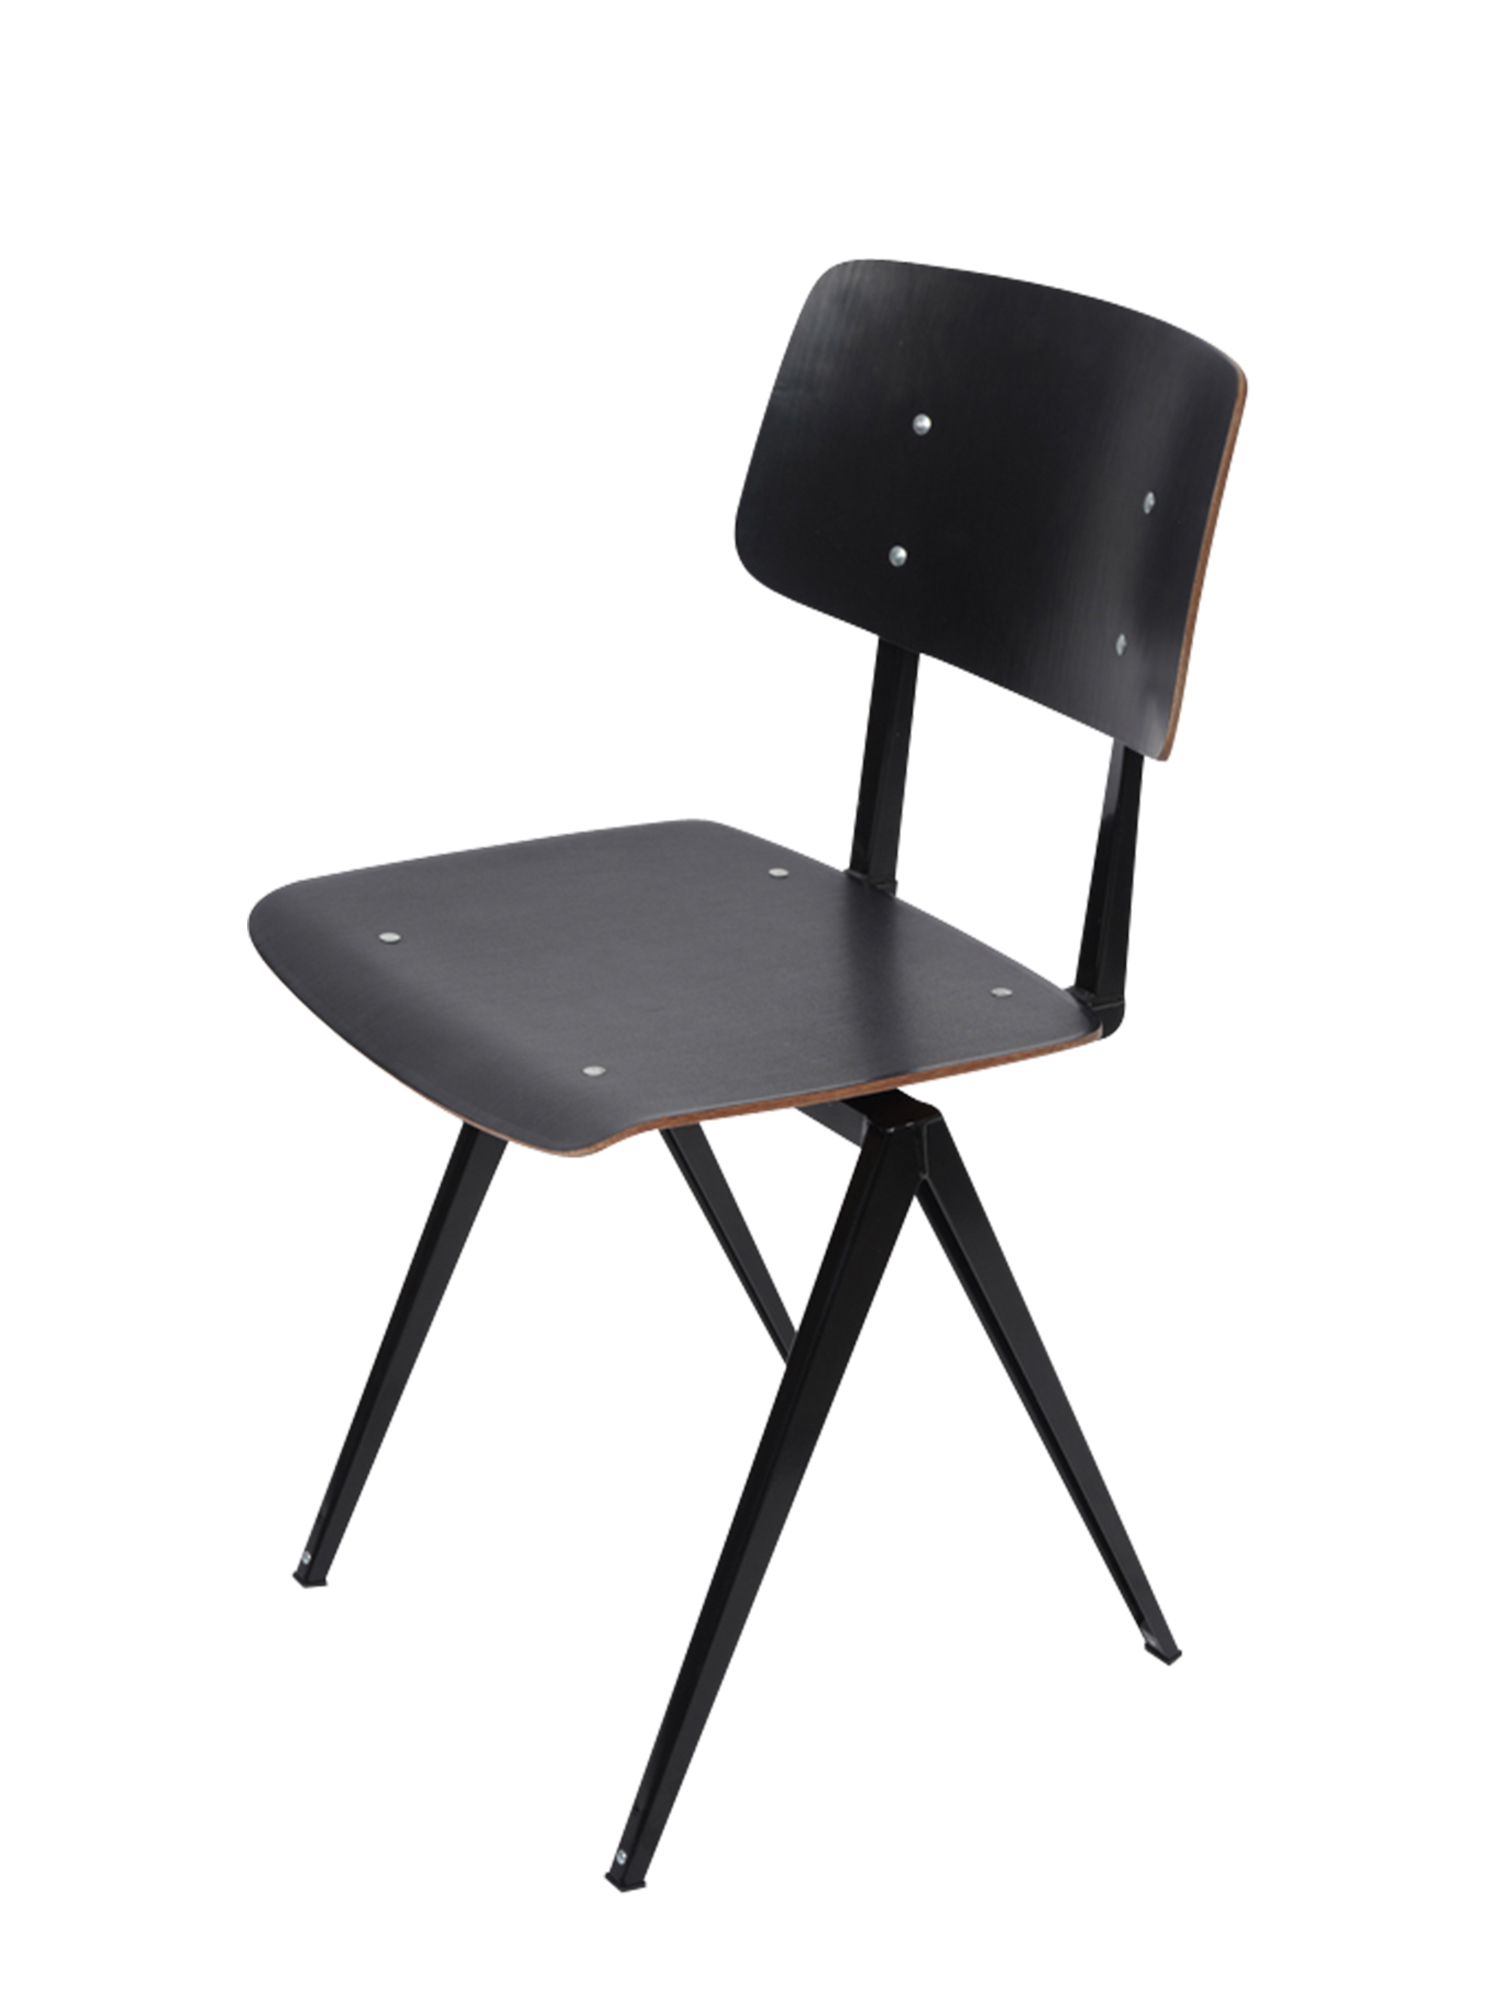 [GALVANITAS] S16 Side Chair Black/Black